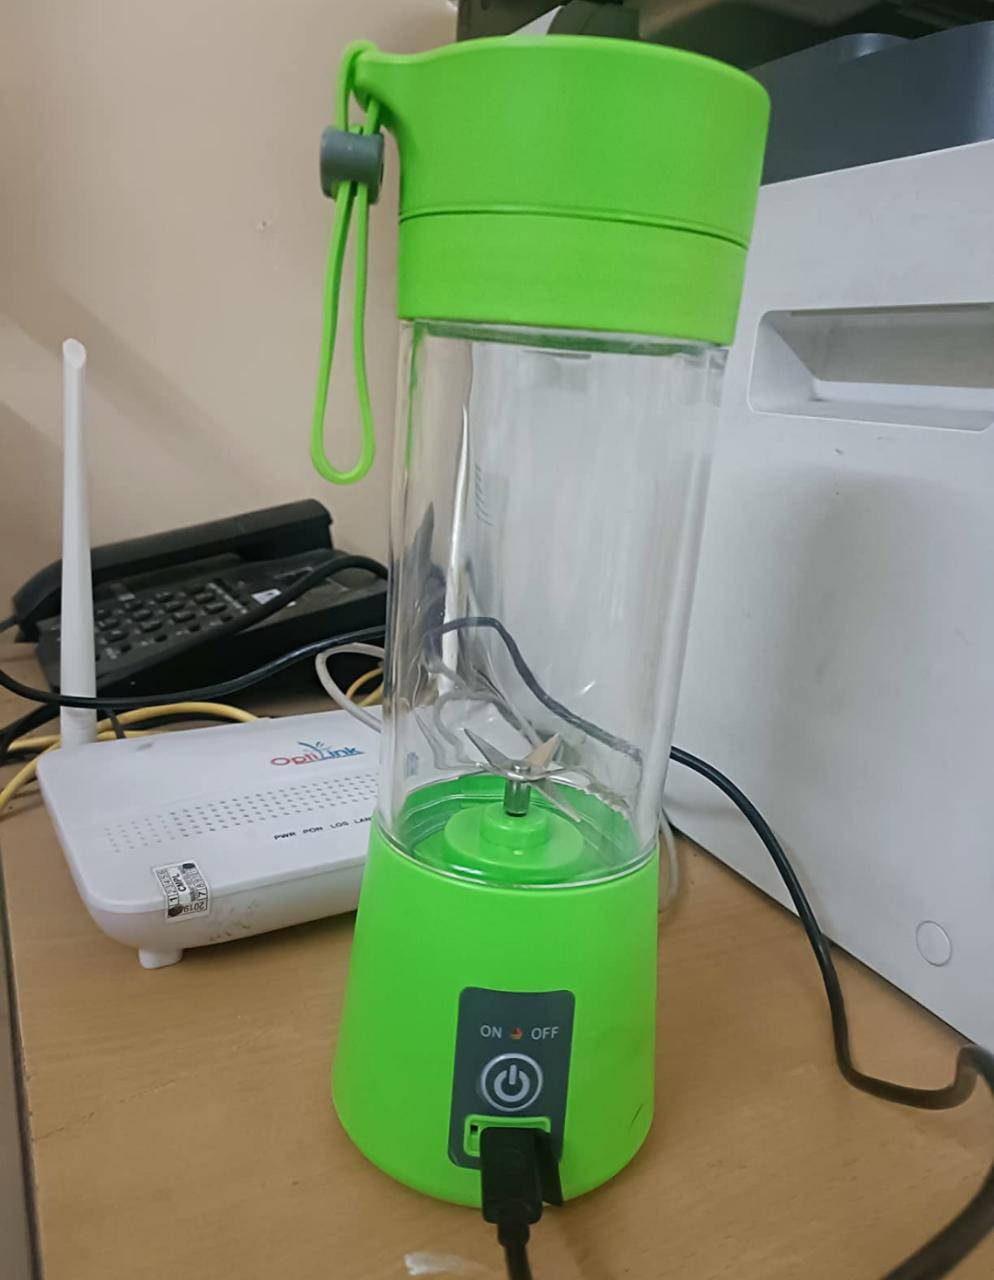 Portable Electric USB Juice Maker Bottle | Blender Grinder Mixer